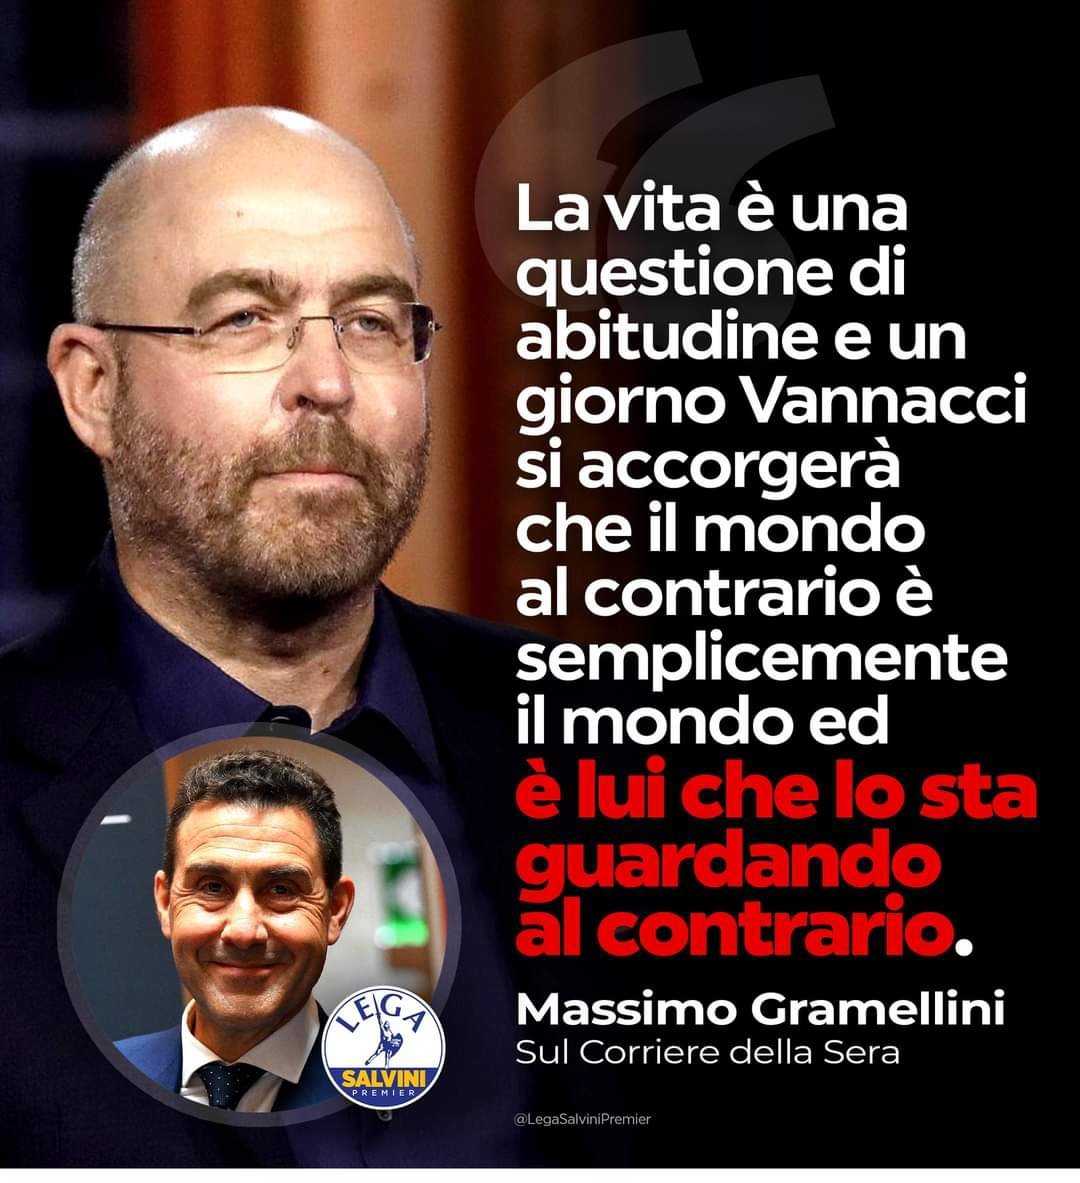 MASSIMO GRAMELLINI 
L’ossessione di giornali, tivù e sinistra per Roberto Vannacci non conosce limiti.
Che pena!